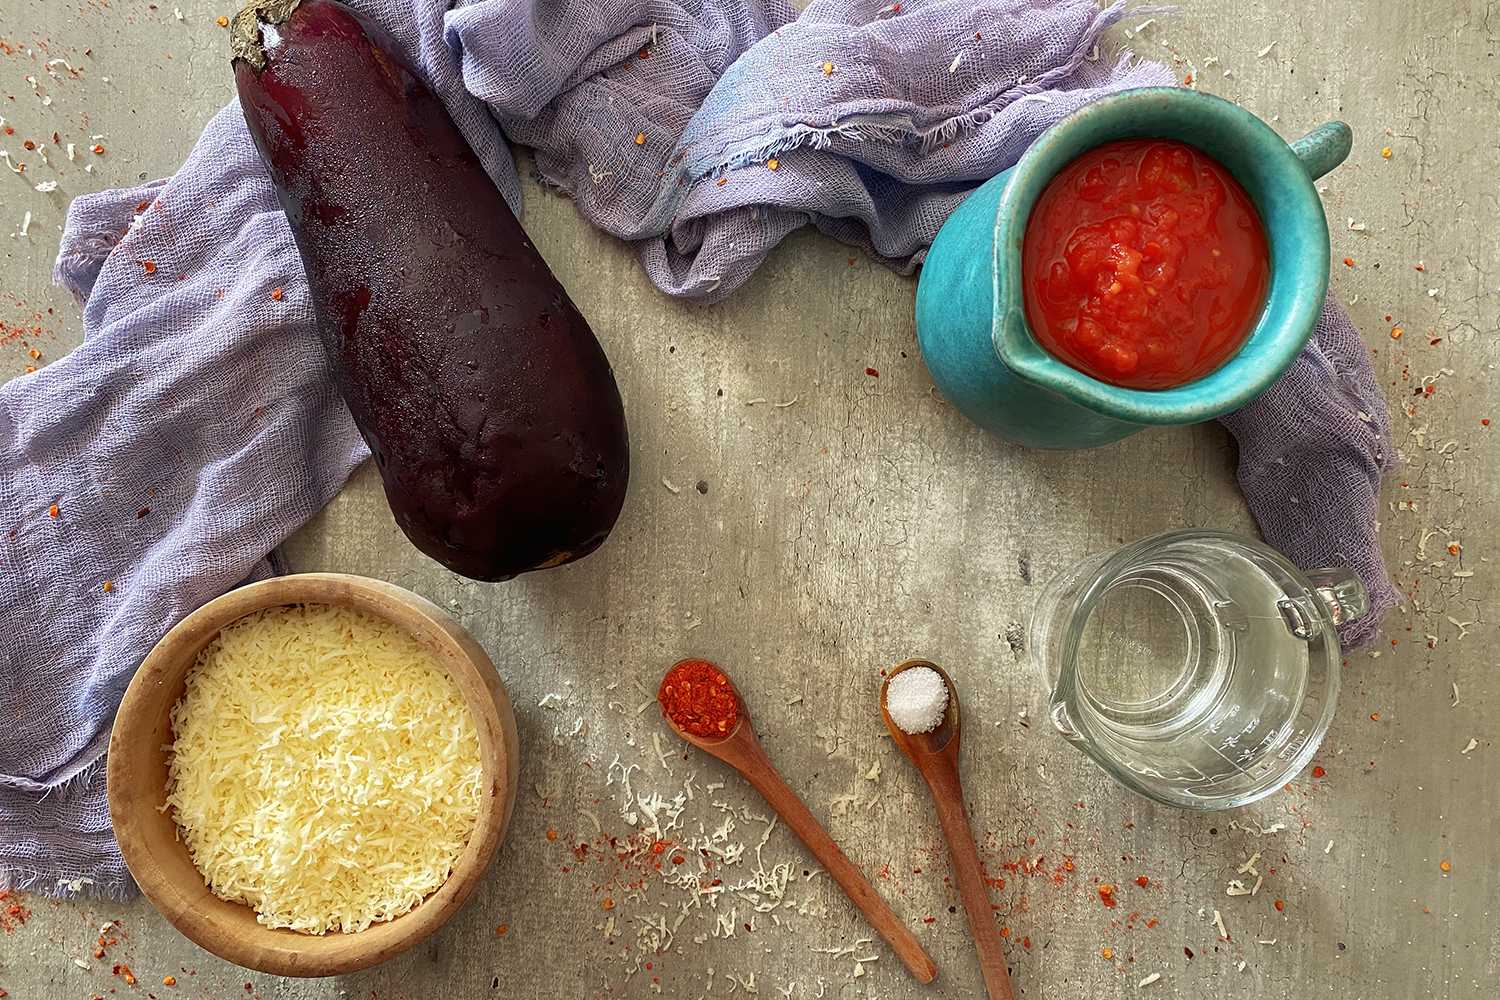 ingredients needed to make eggplant parmesan 